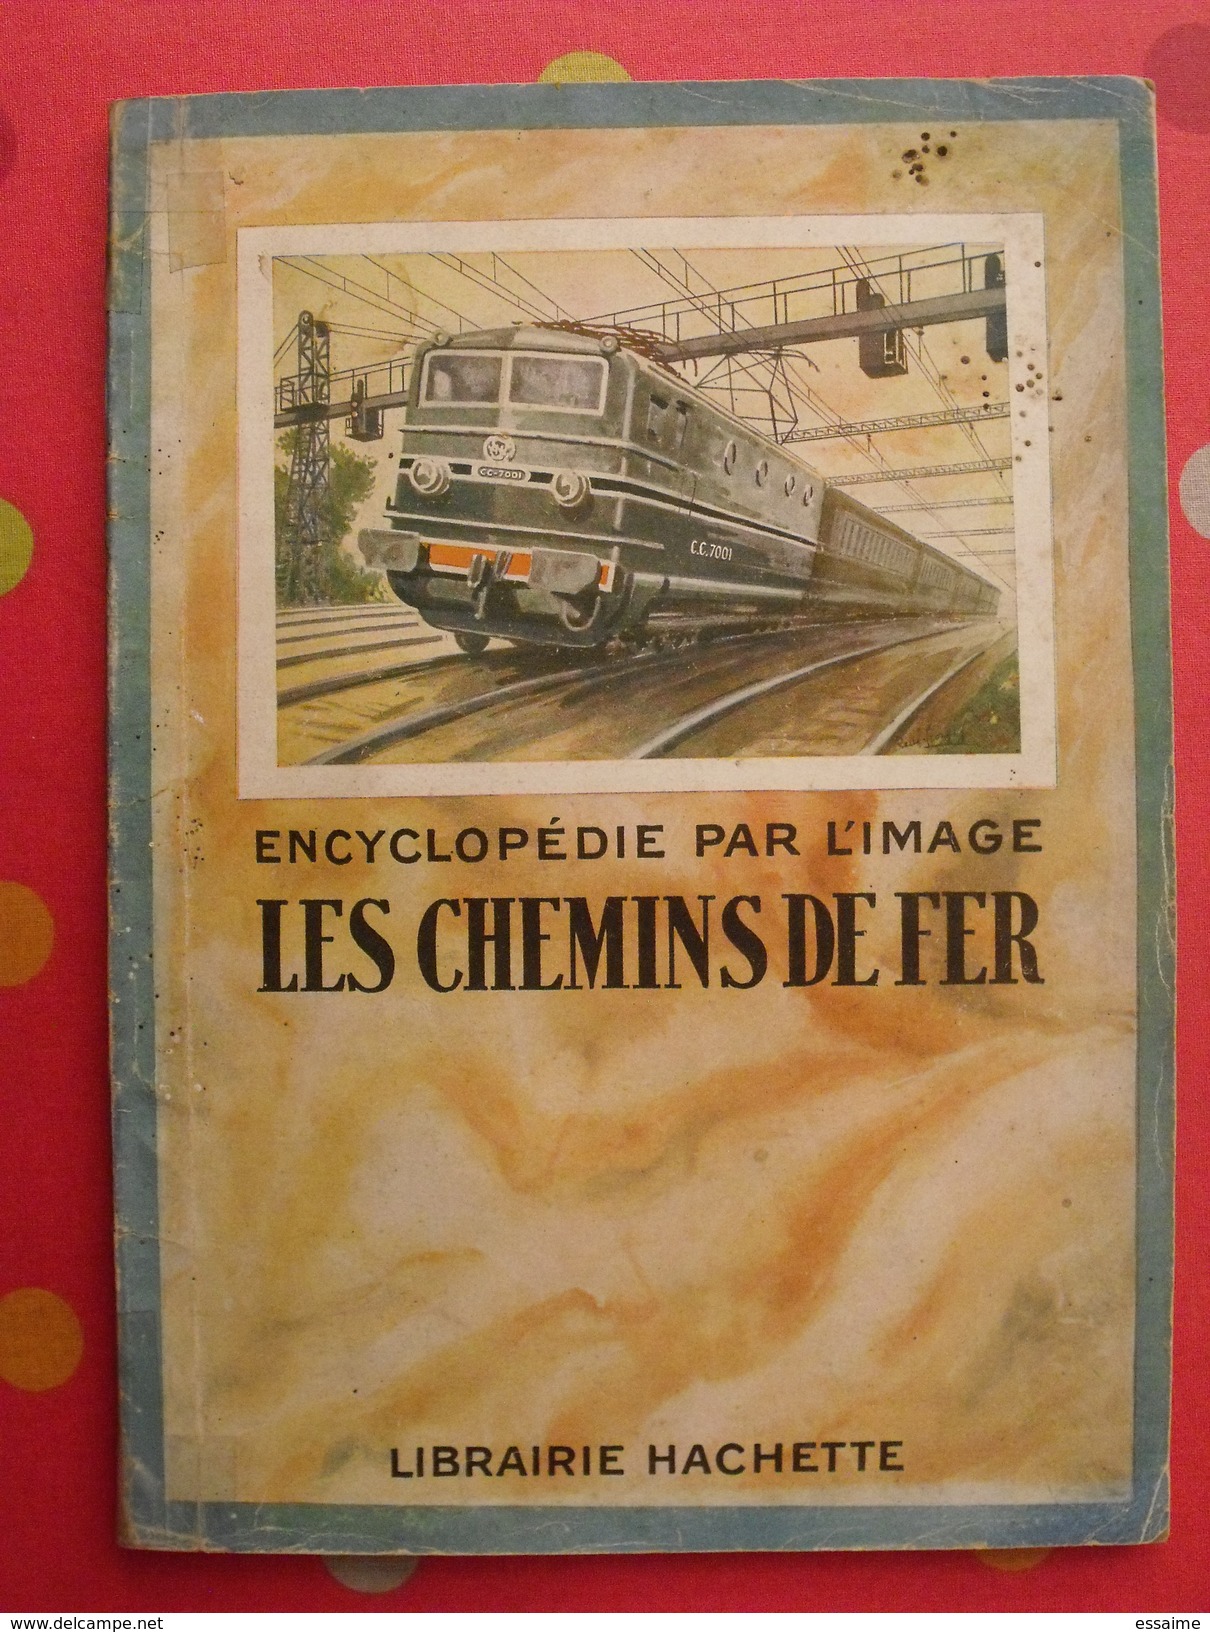 Les Chemins De Fer. Encyclopédie Par L'image. Hachette 1927. Bien Illustré - Chemin De Fer & Tramway